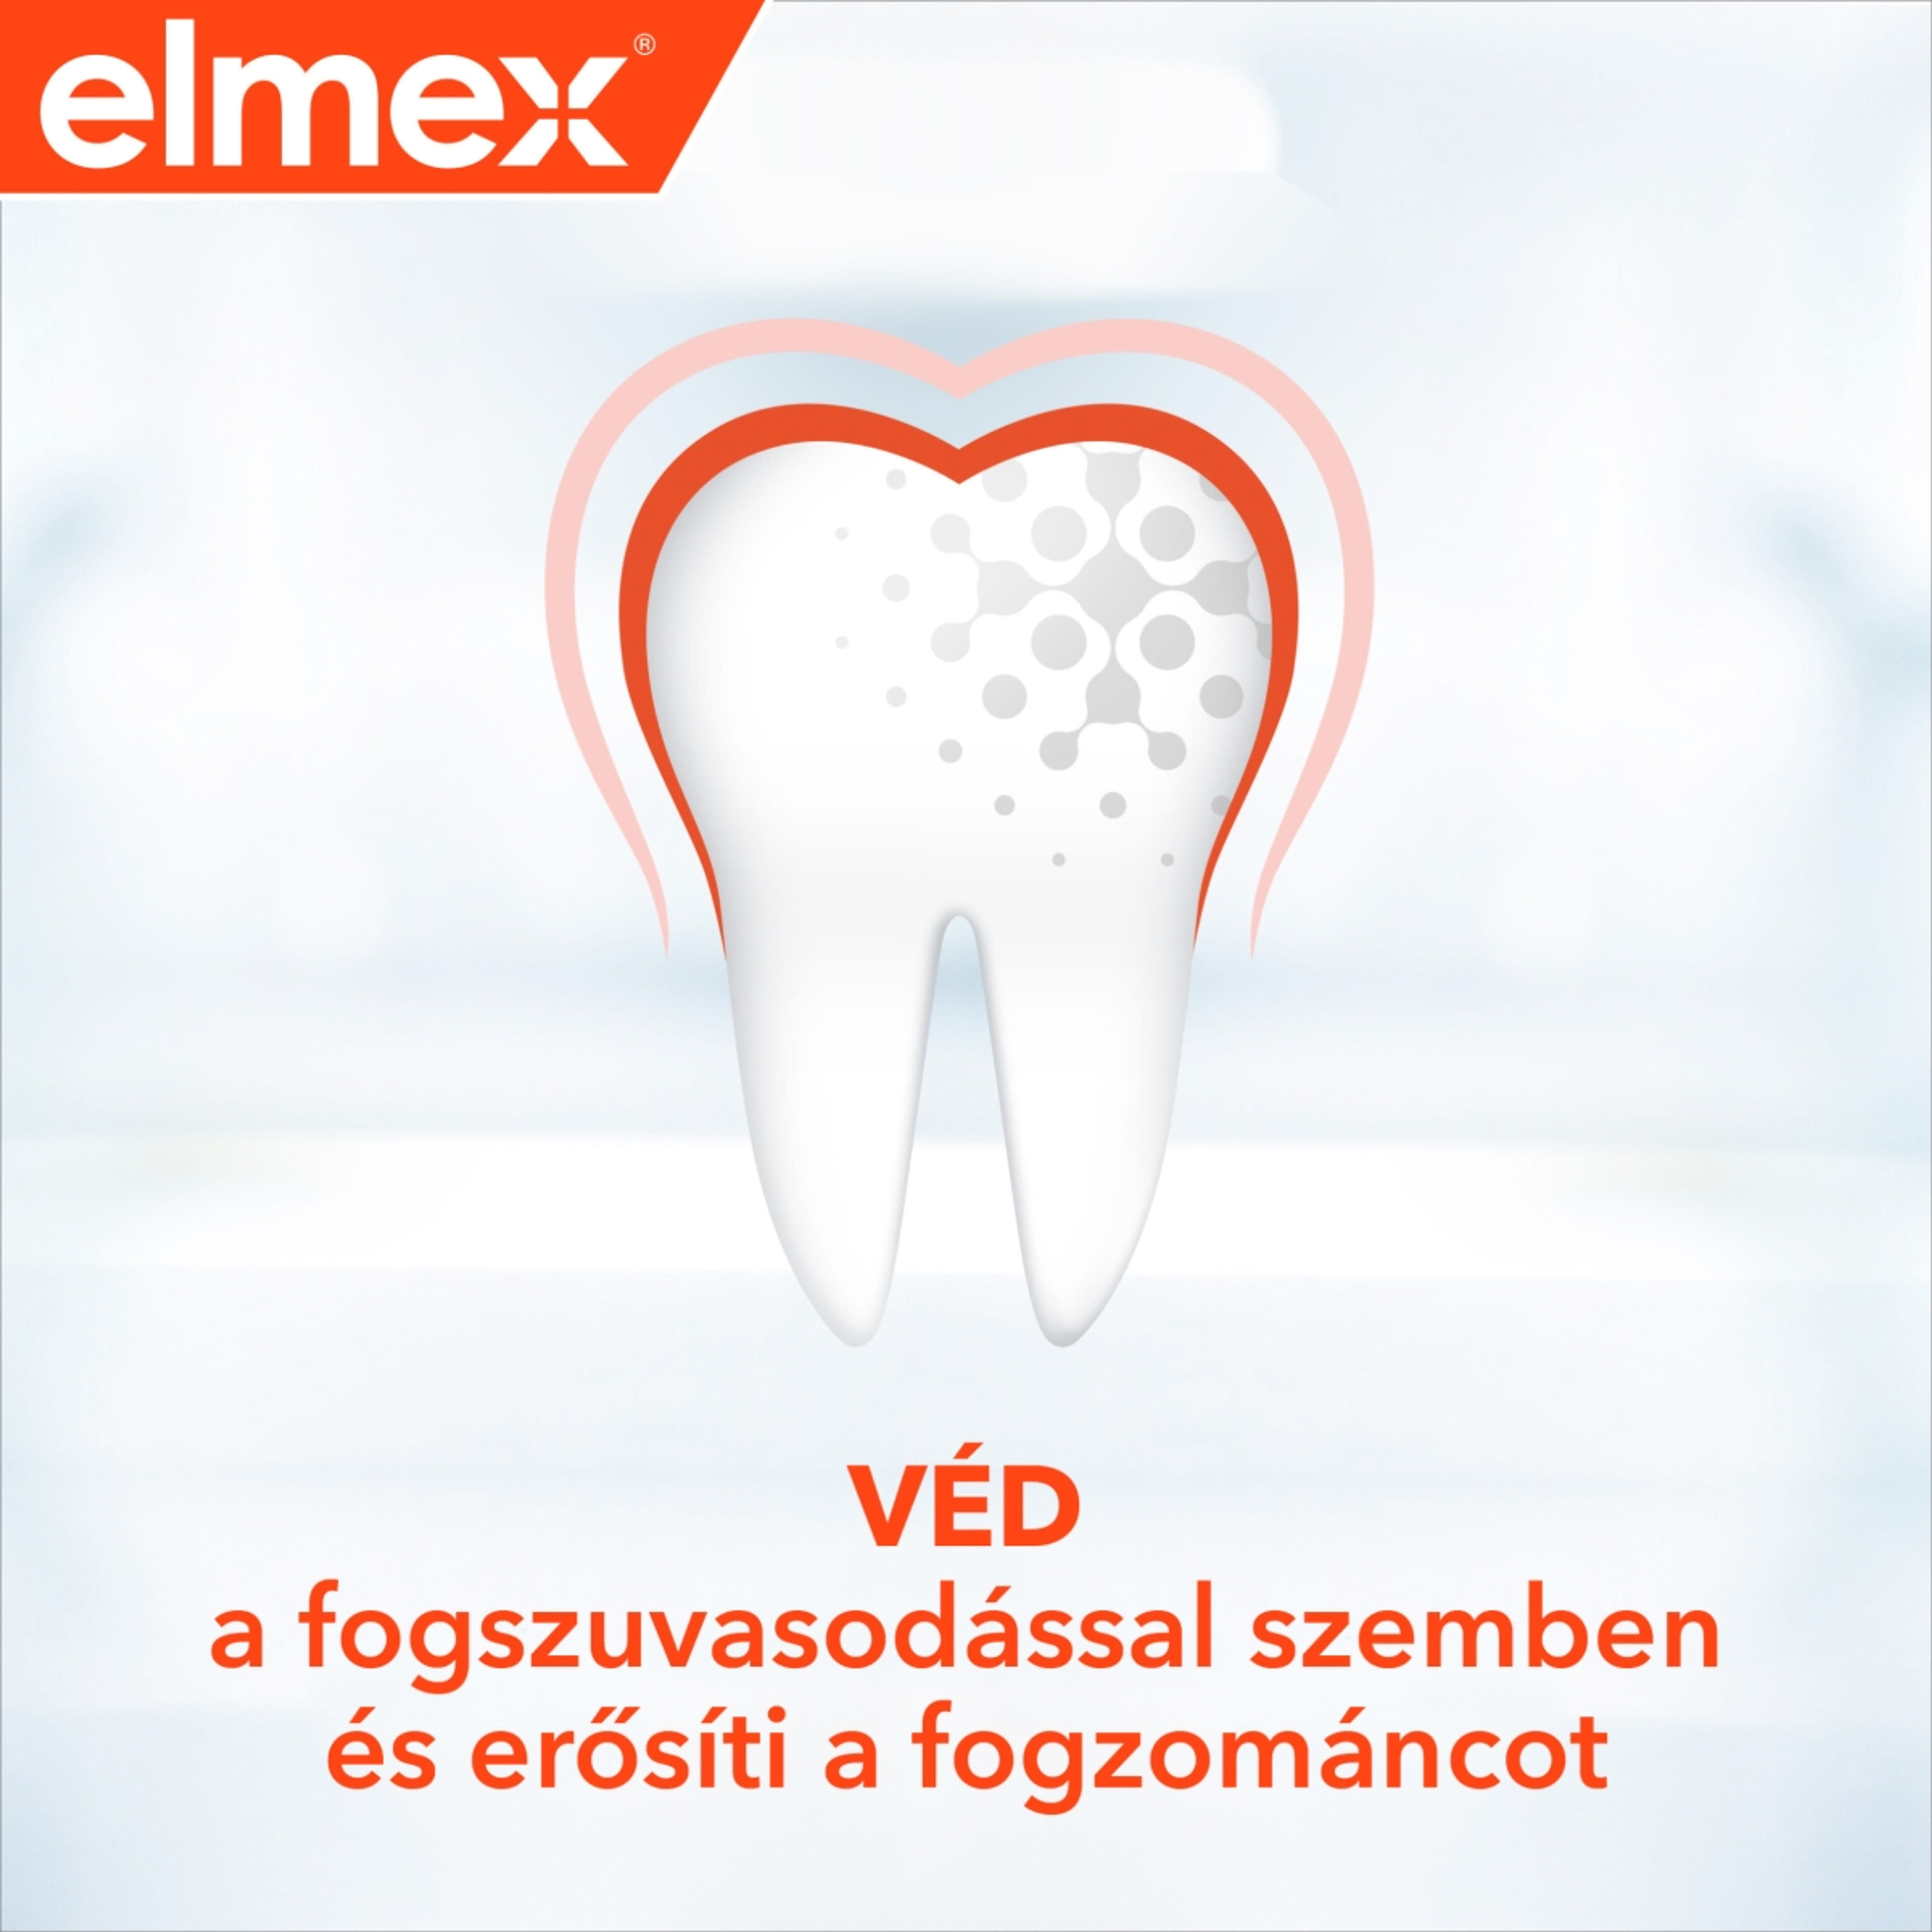 Elmex Caries Protection fogszuvasodás elleni fogkrém - 75 ml-4